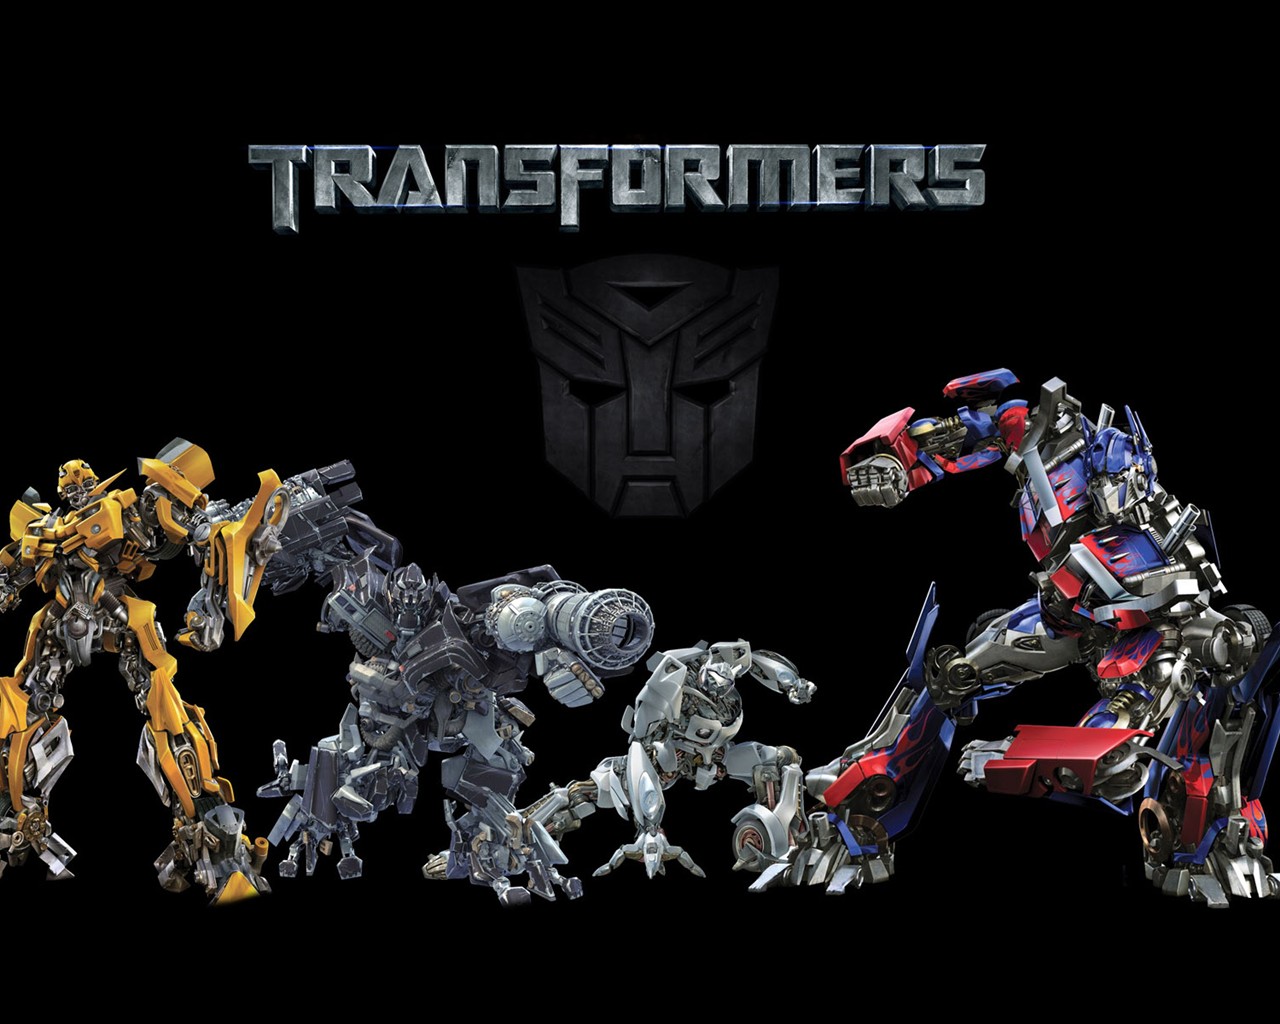 Transformers HD papel tapiz #18 - 1280x1024